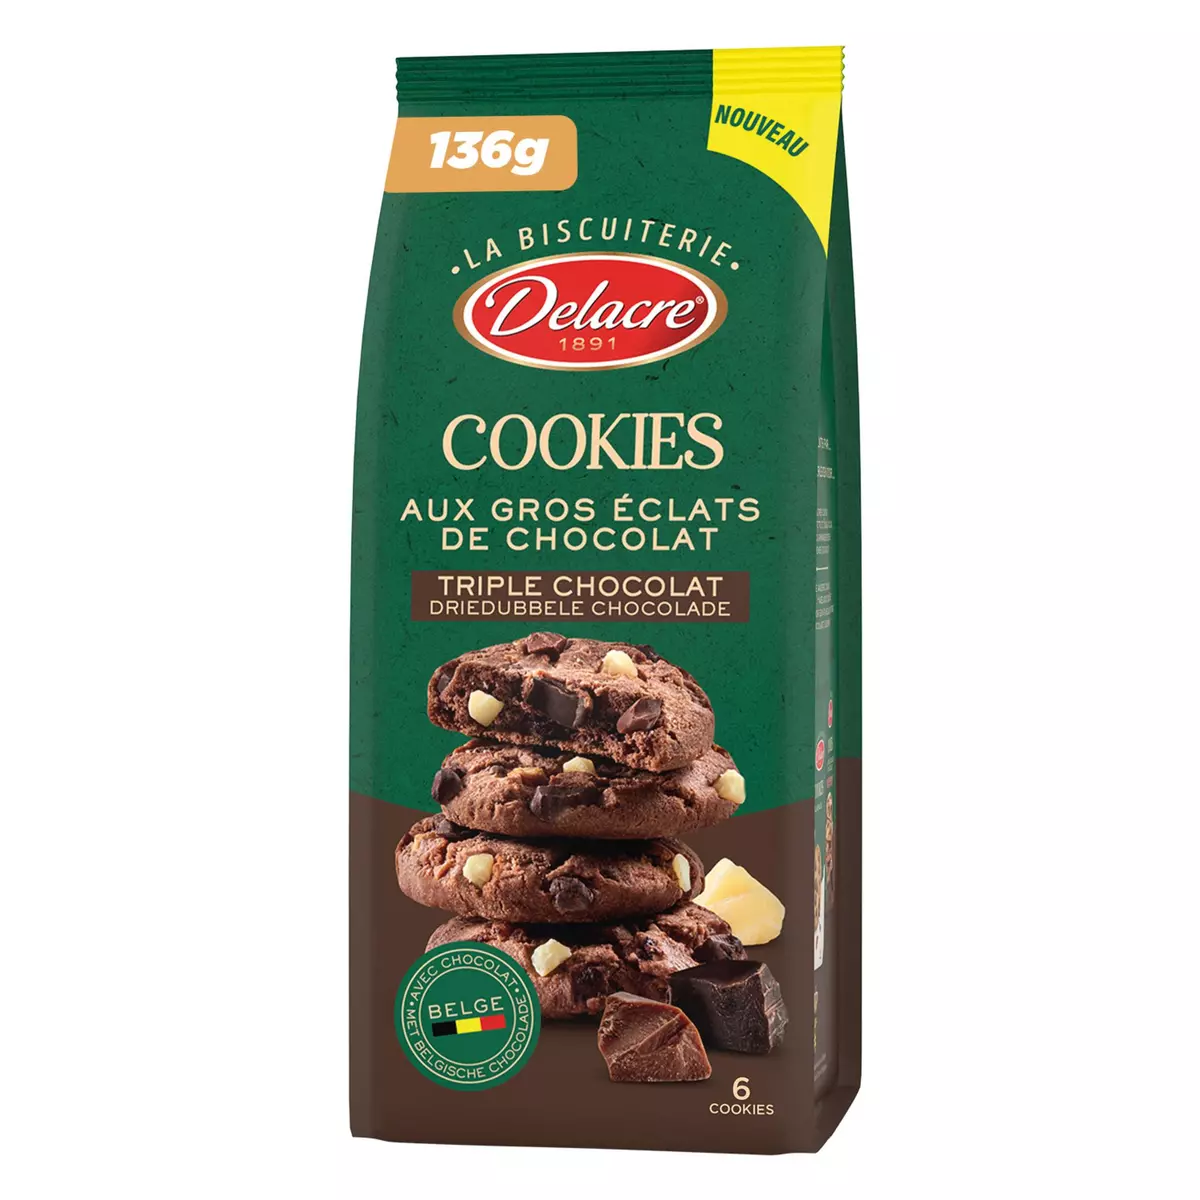 DELACRE Cookies triple chocolat aux gros éclats de chocolat 6 cookies 136g  pas cher 